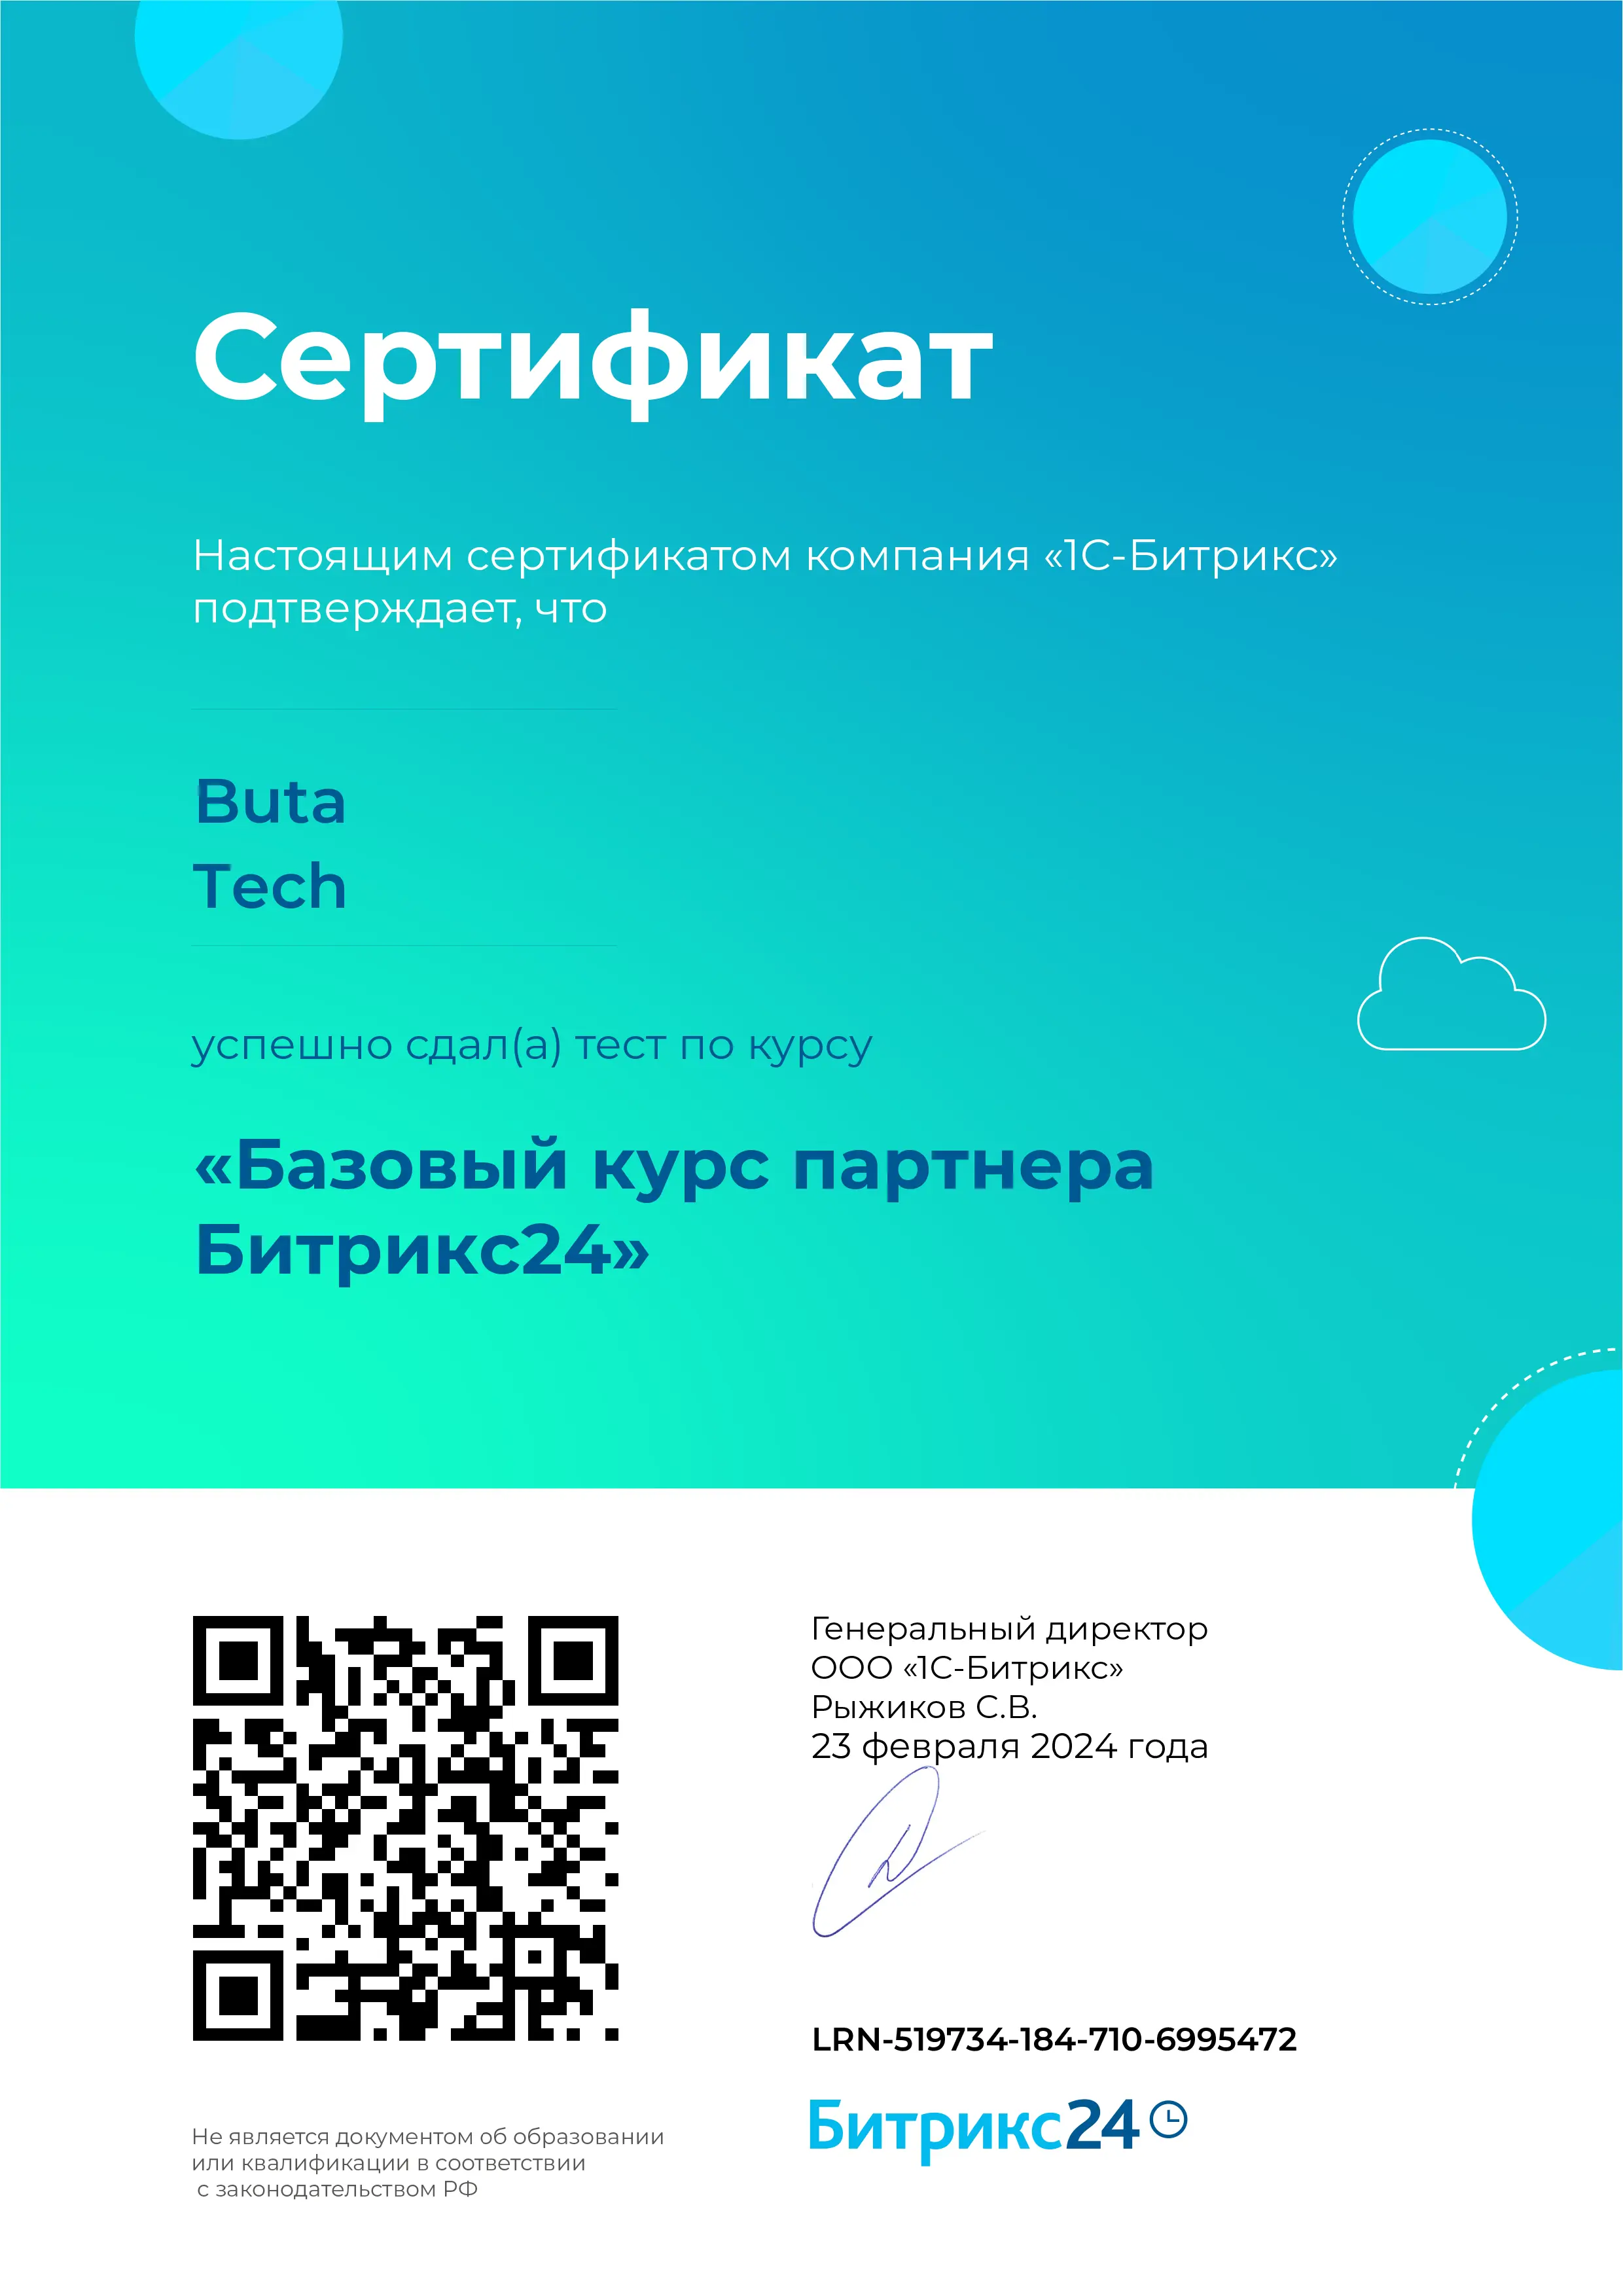 iso_sertifka